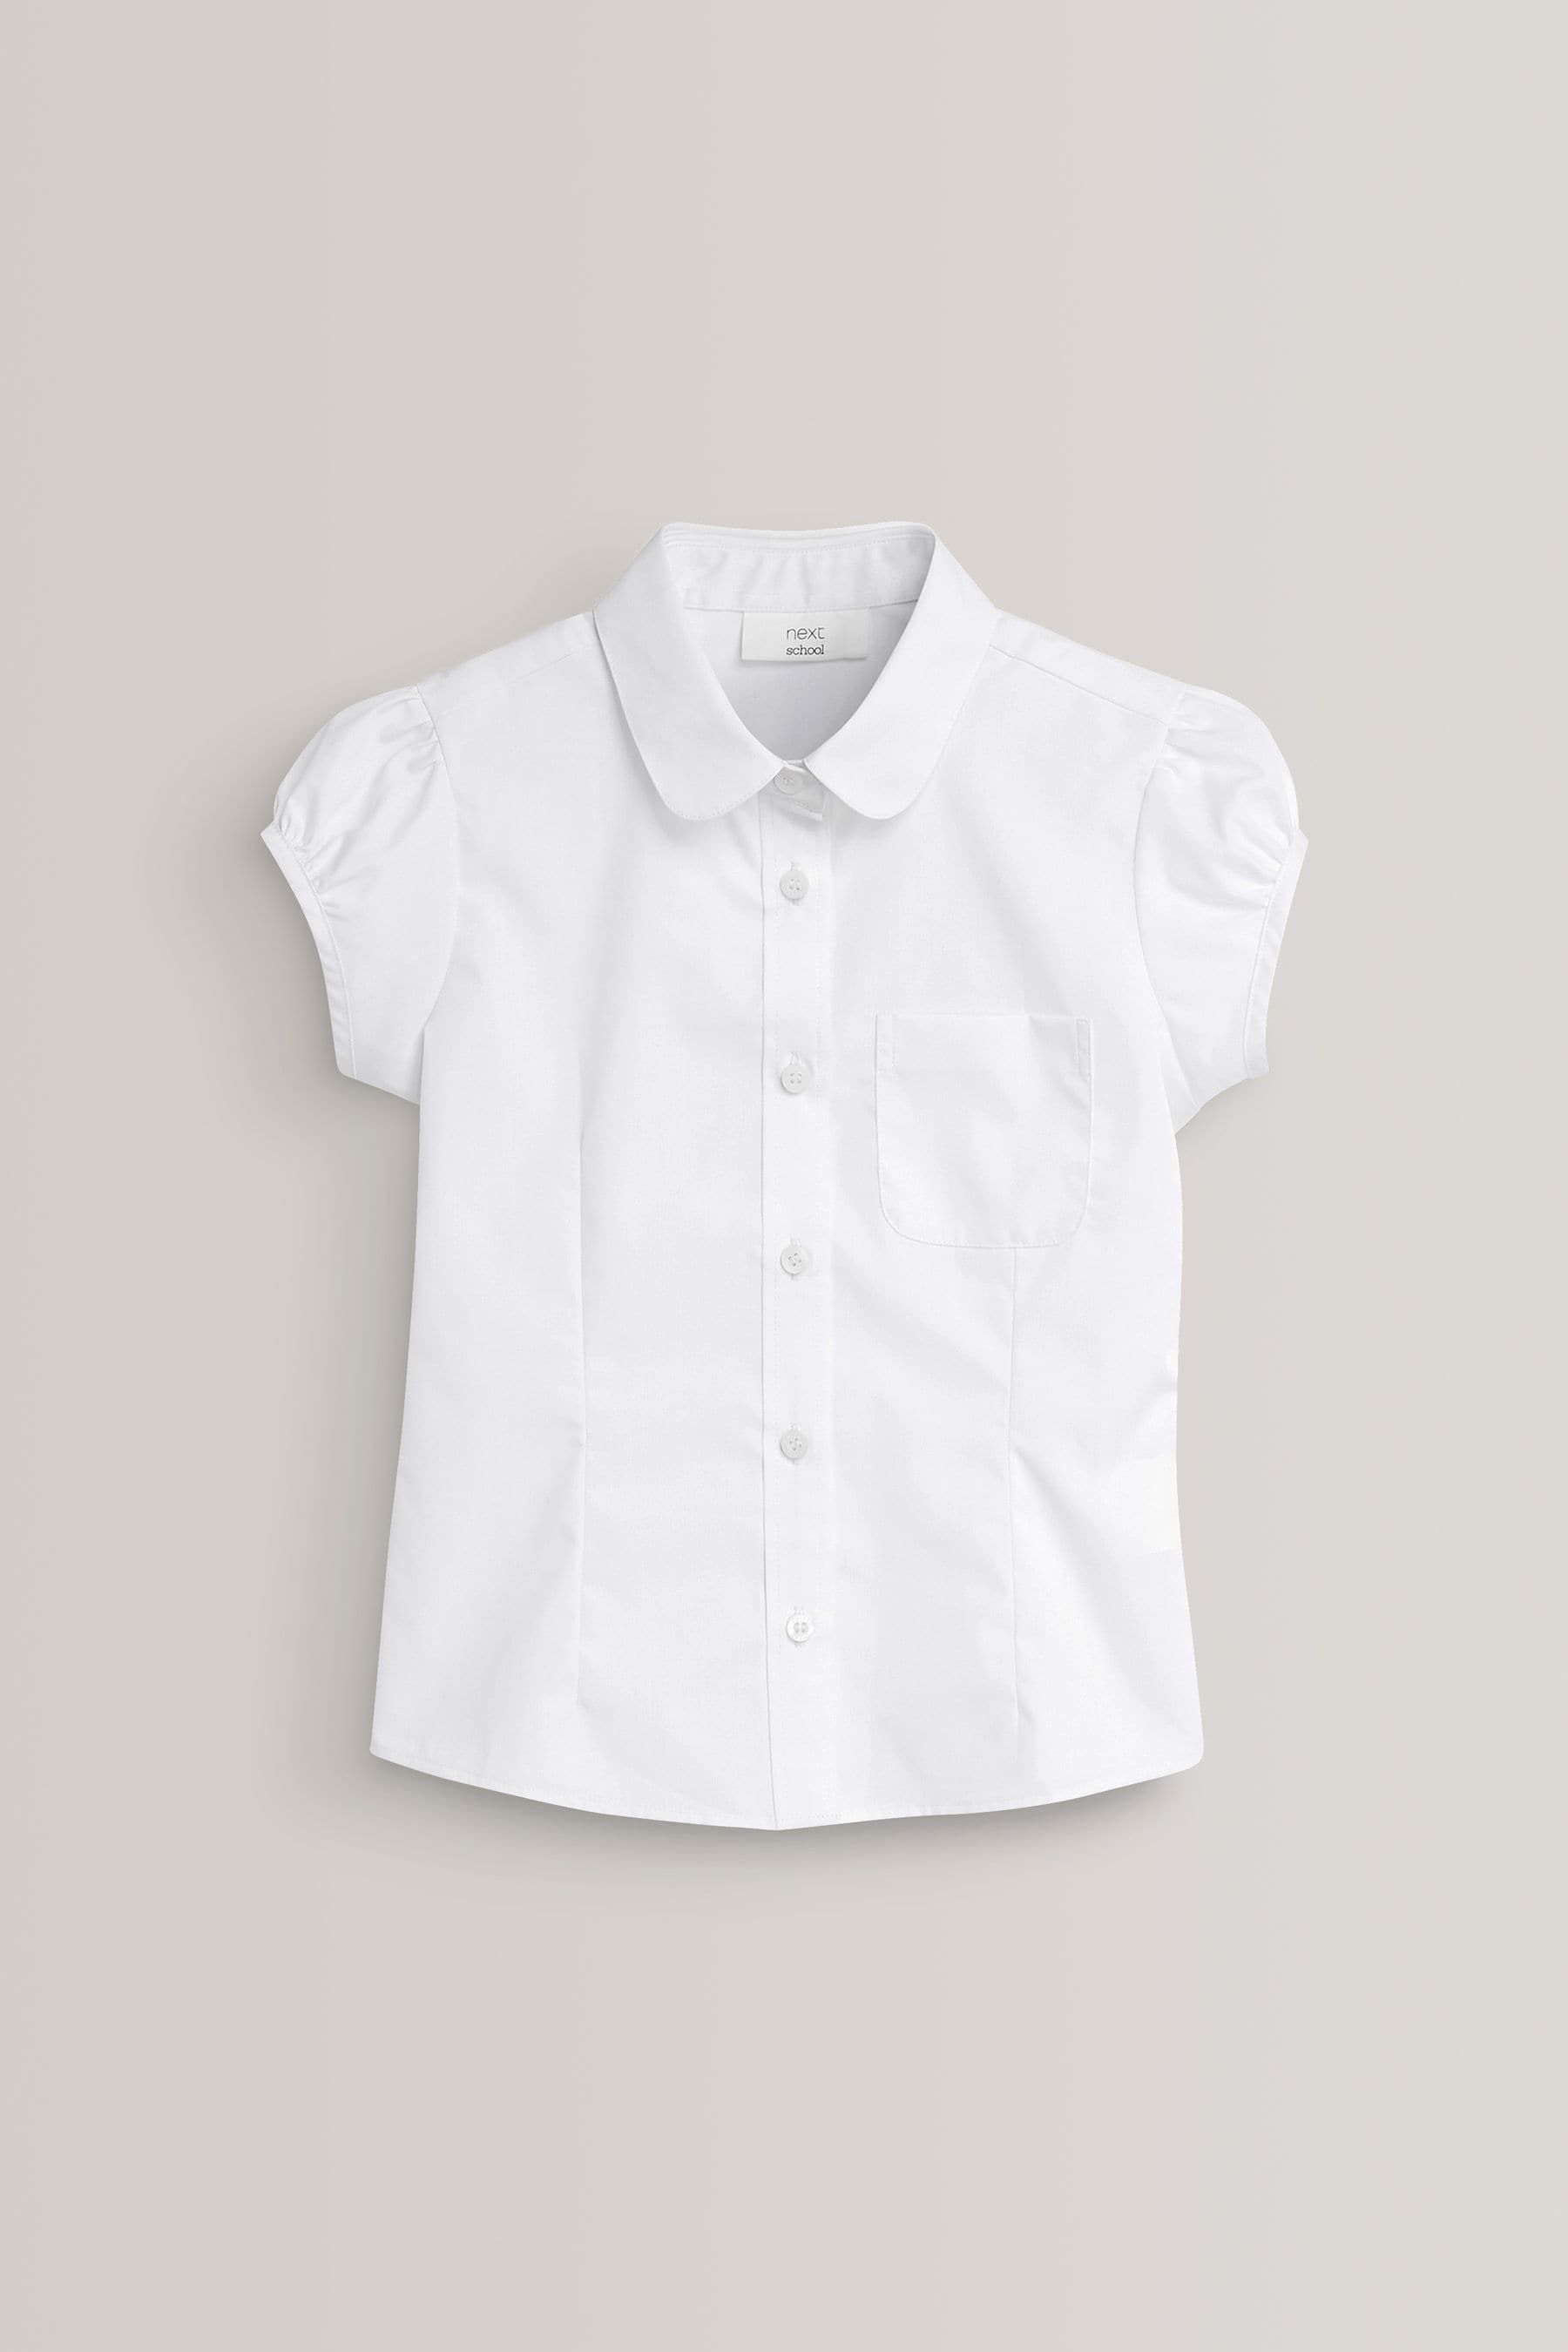 Школьная форма рубашка. Блузка Некст размер 140 бирка.